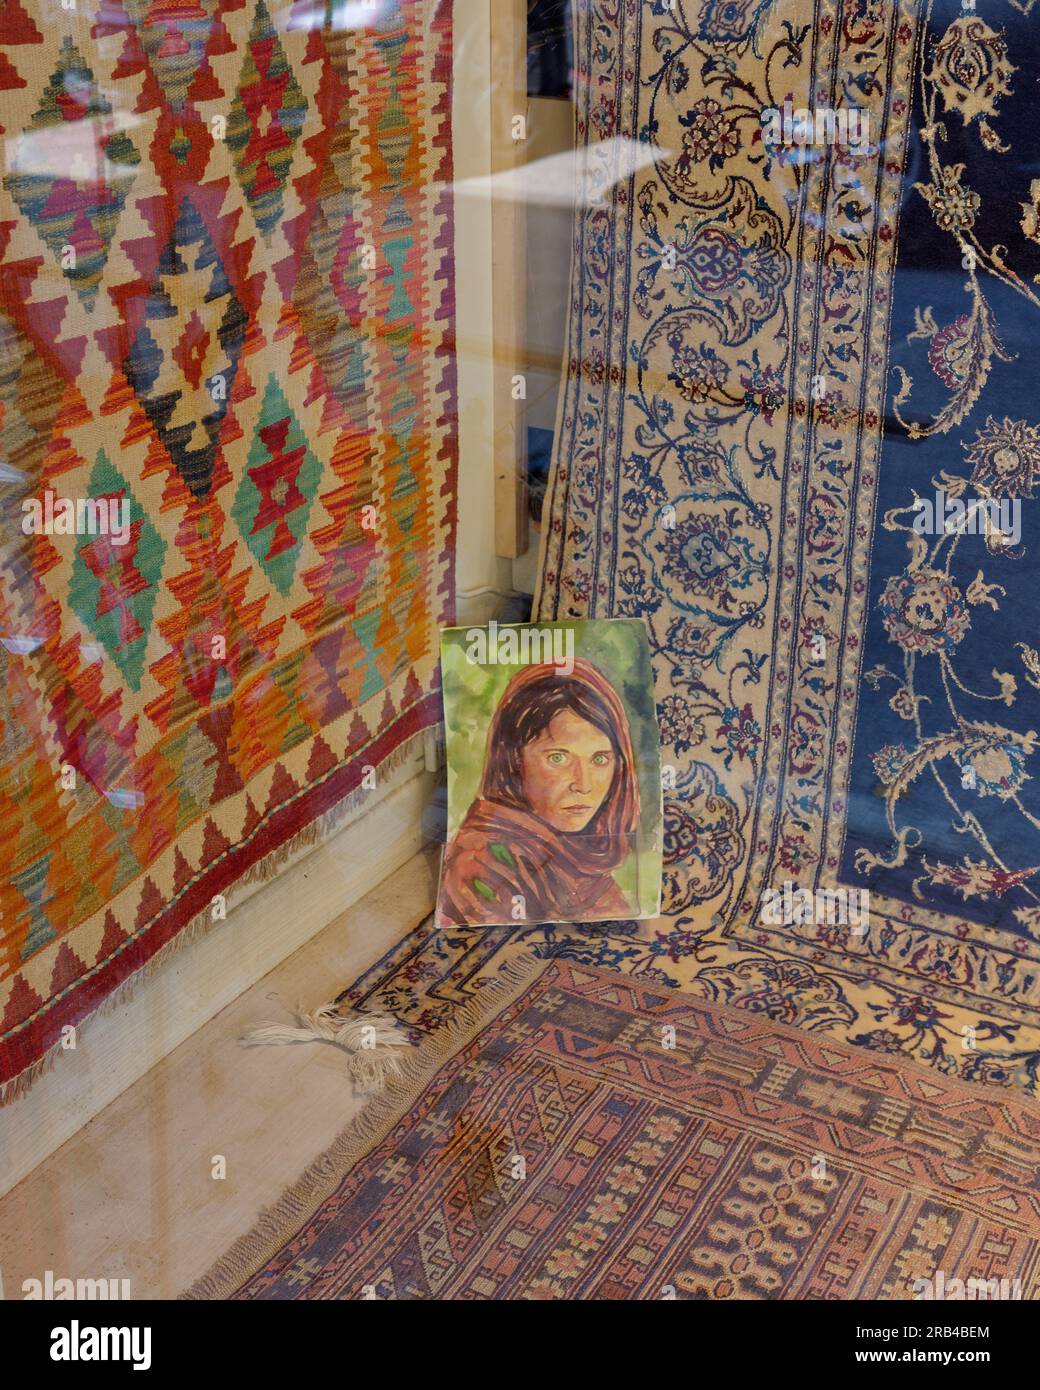 Tapis dans une vitrine à Istanbul avec une peinture de la célèbre photo afghane Girl de Steve McCurry Banque D'Images